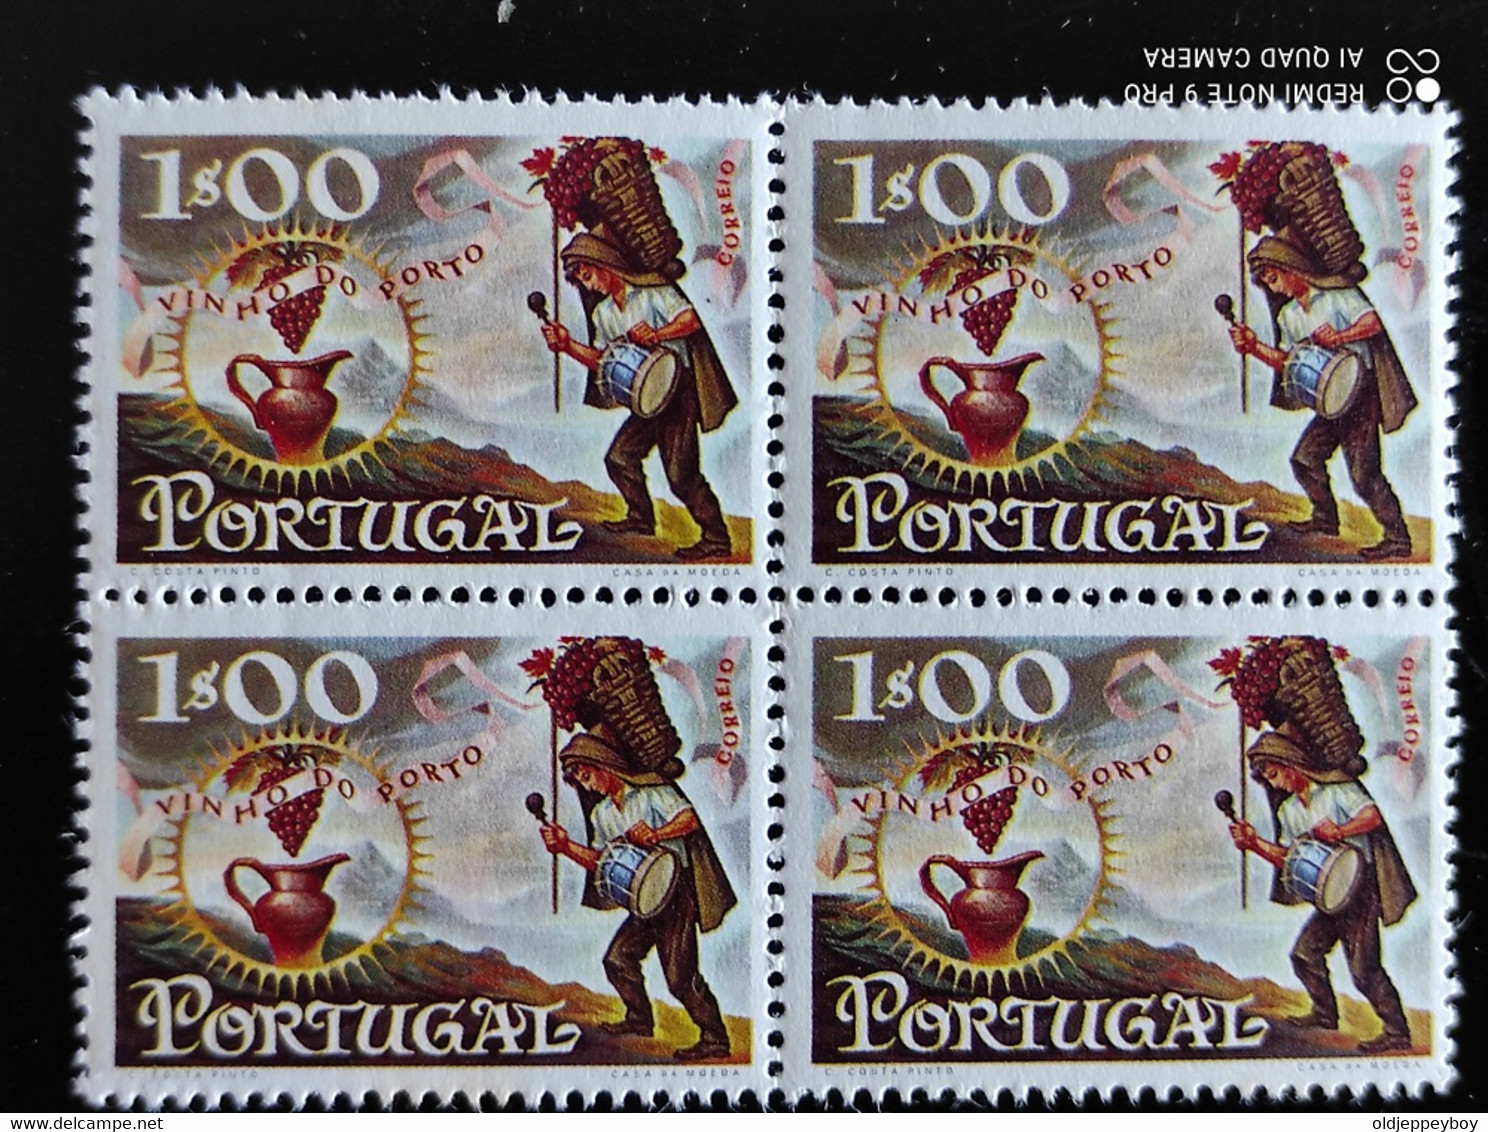 ERRO VARIEDADE  Portugal, 1970 - Vinho Do Porto  Mundifil 1088 2 Blocks Of 4 Colour Variation Error Cor Errada MNH Rare - Ungebraucht